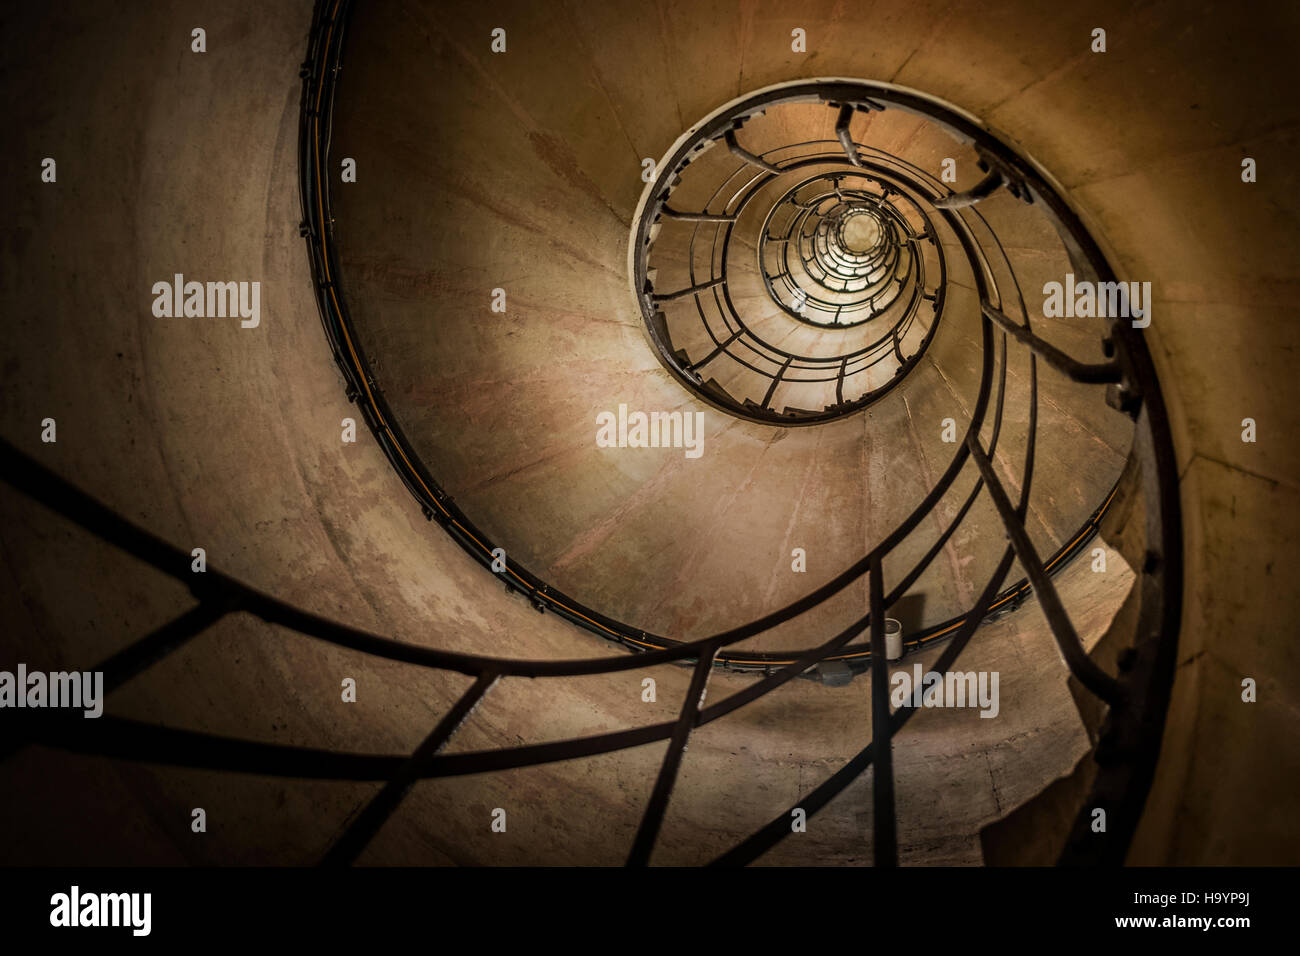 Buscando una de las escaleras en espiral del Arc de triomphe, París Foto de stock